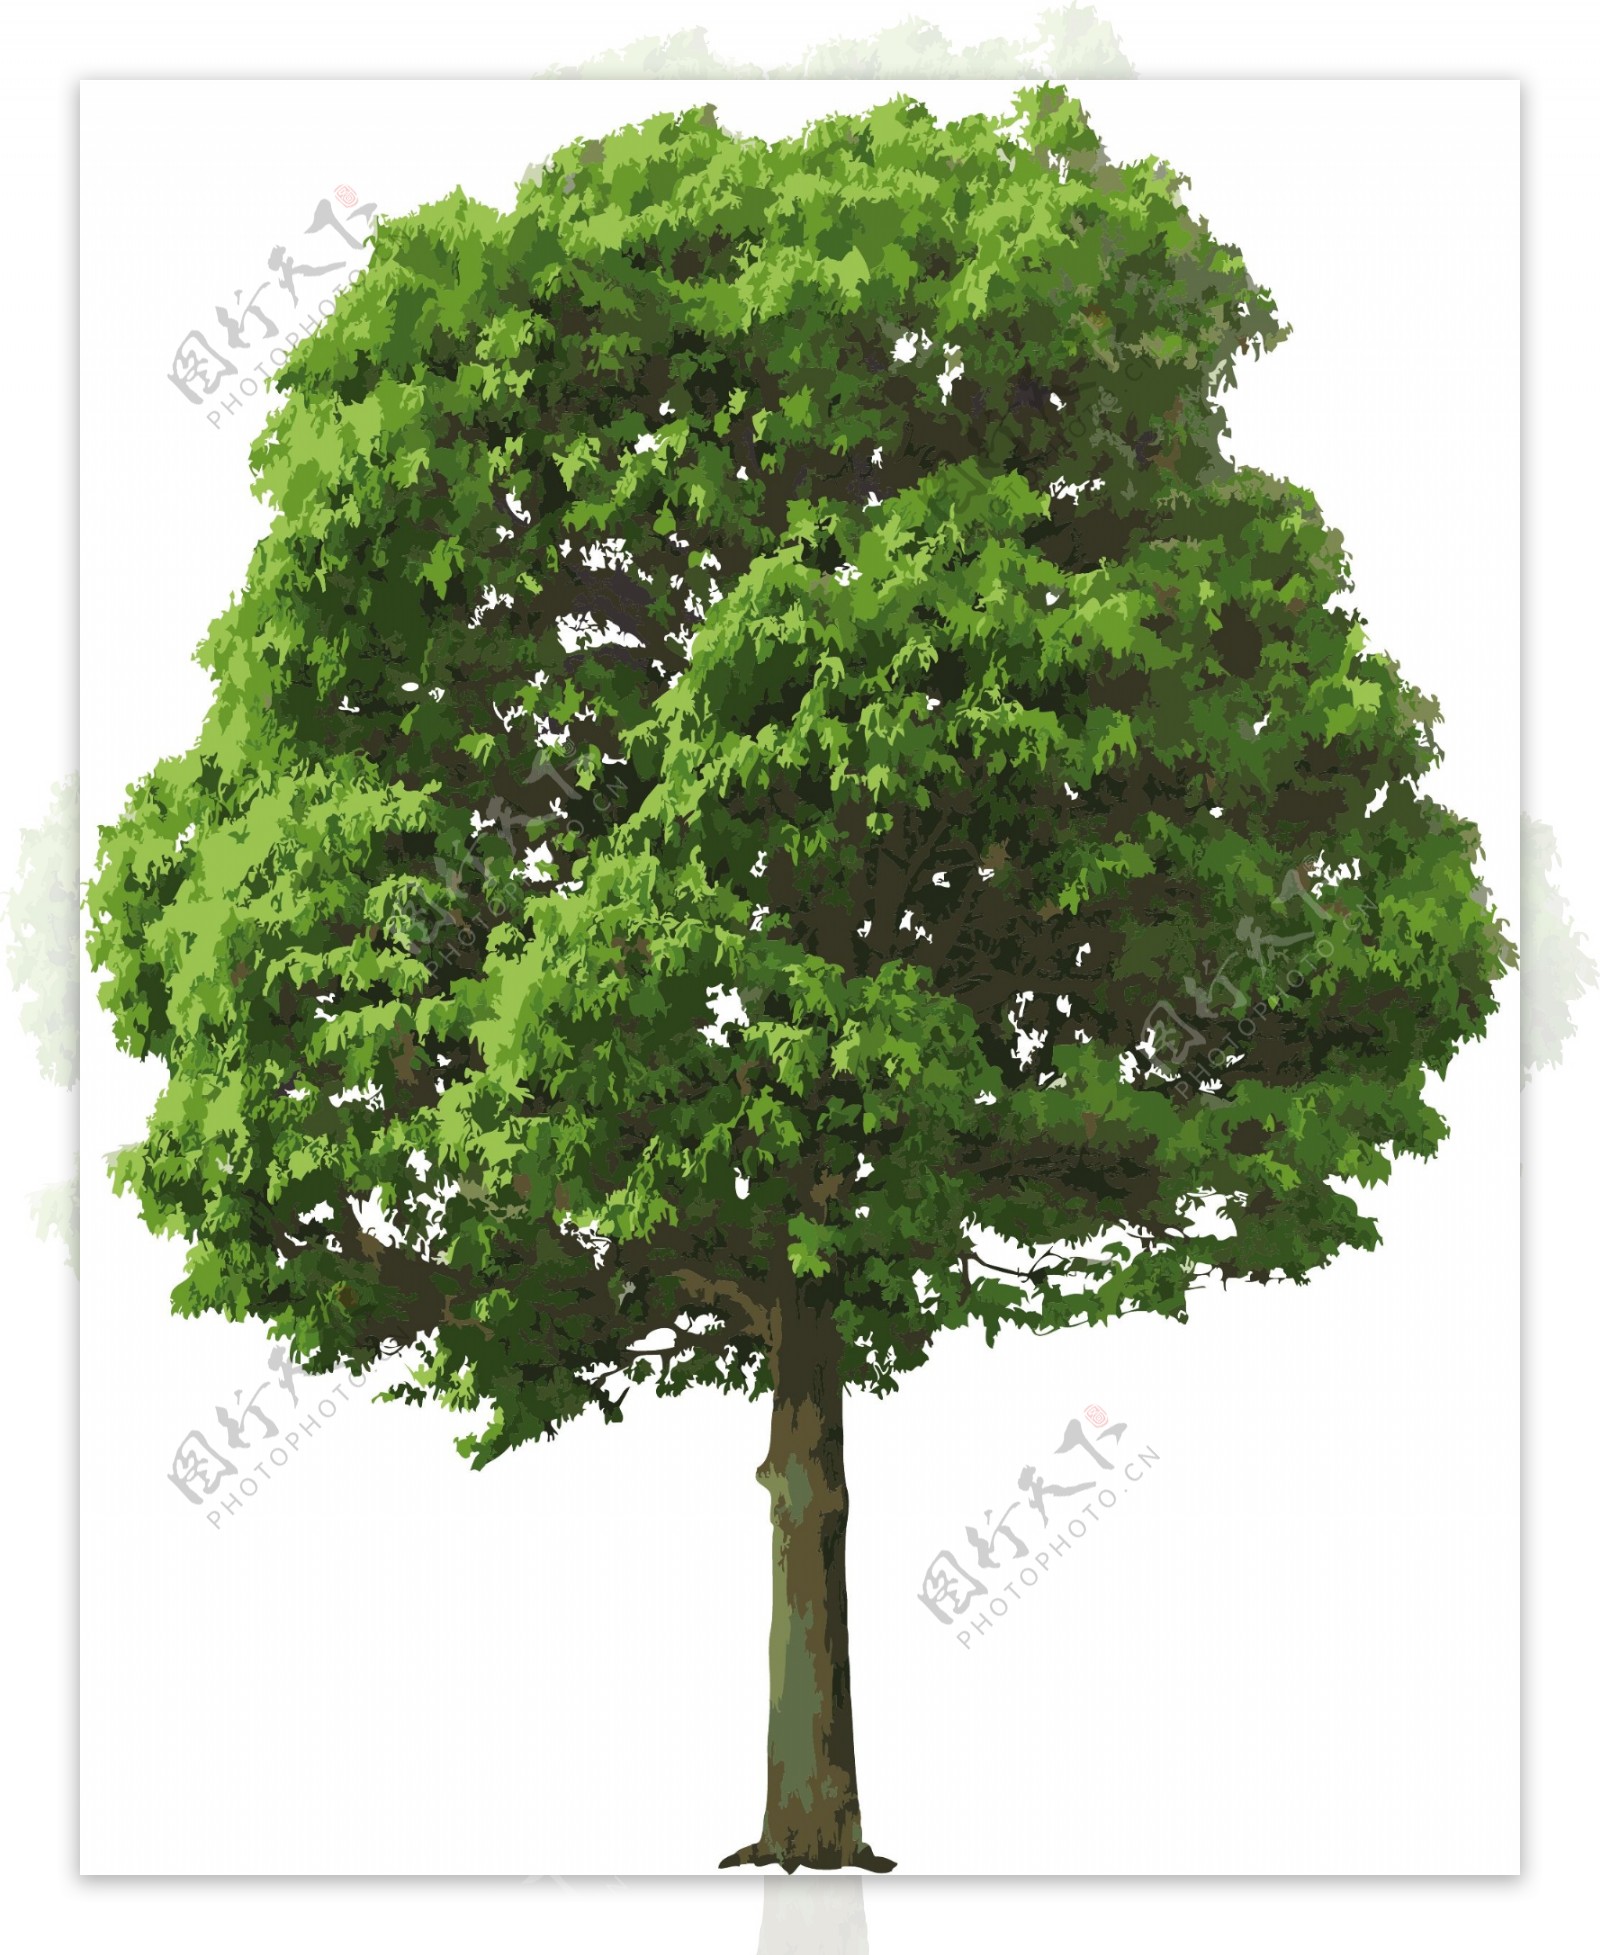 茂盛绿树矢量素材